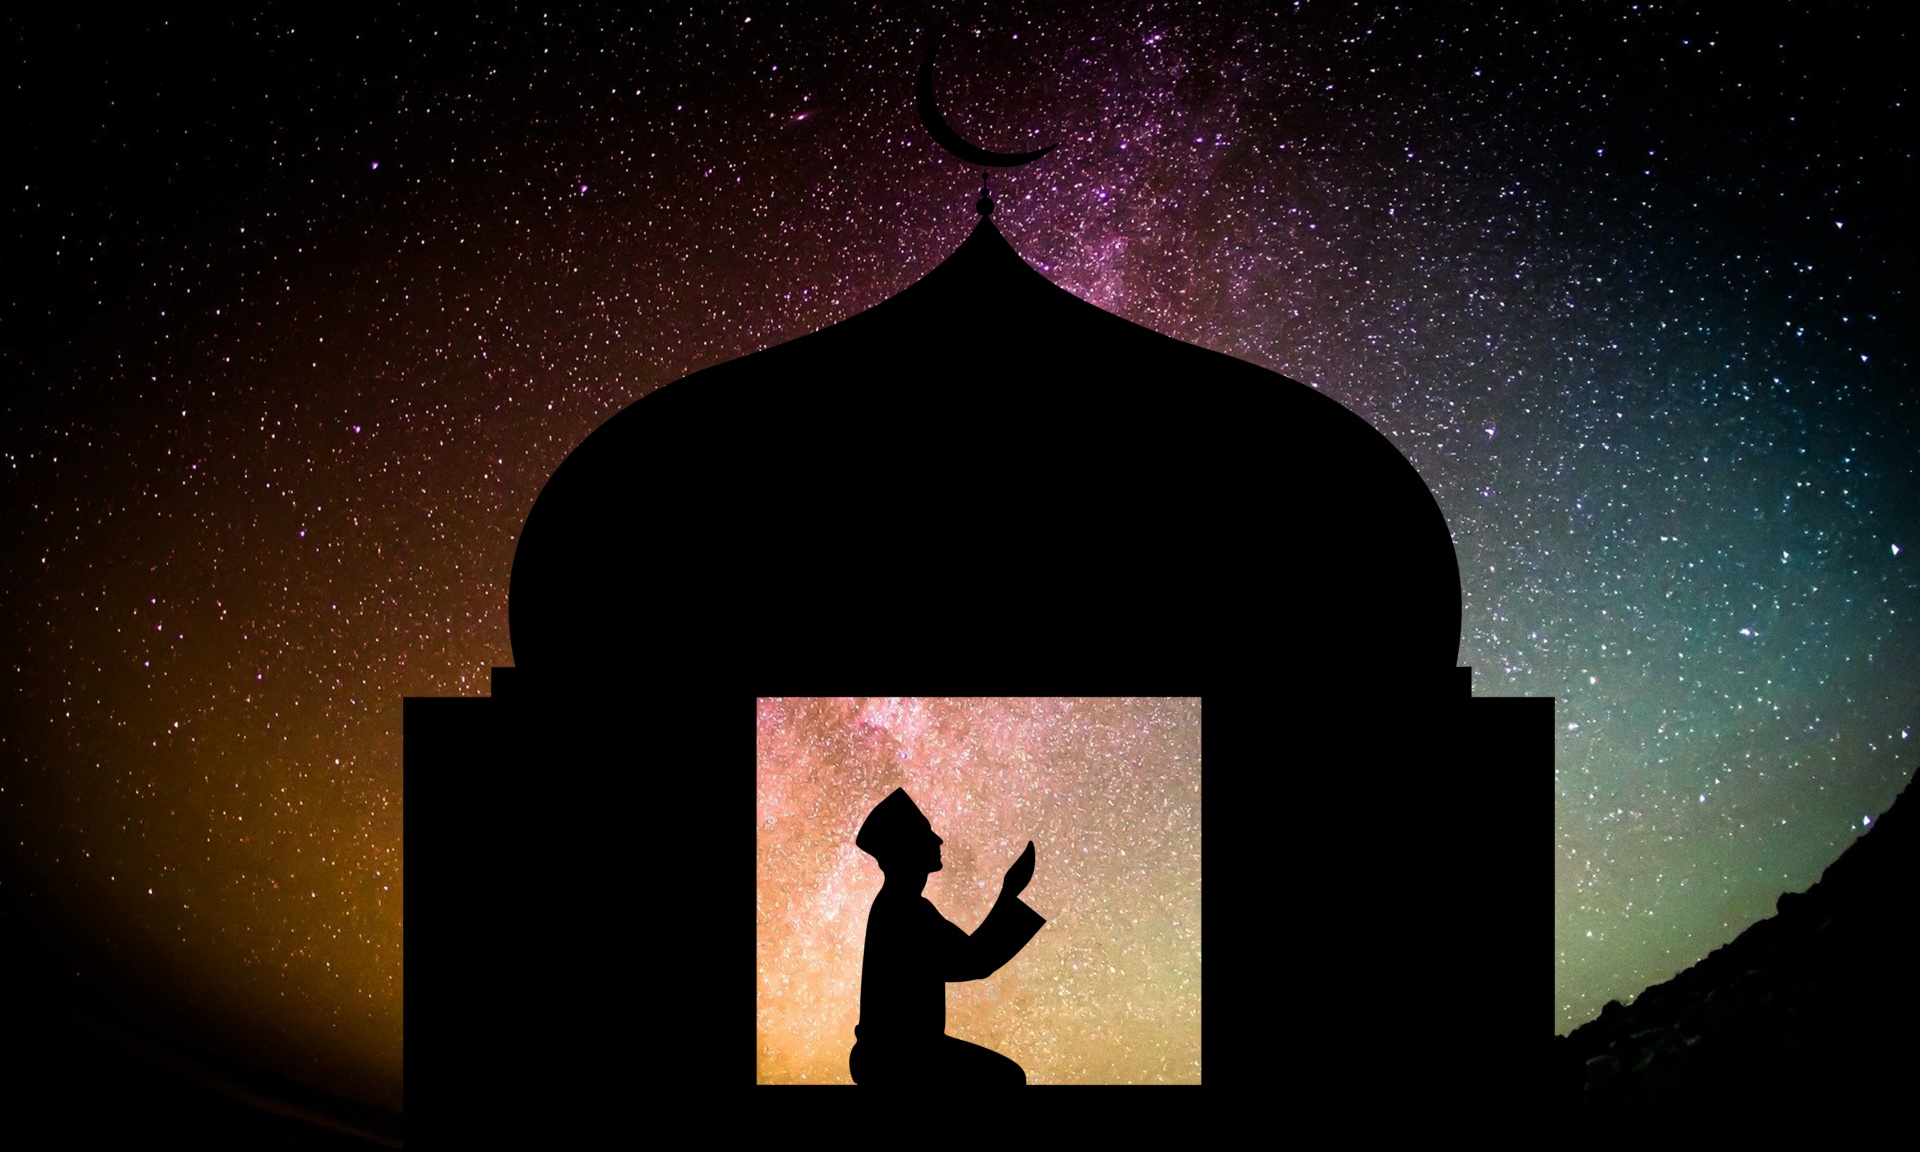 穆斯林男子在祈祷地毯上祈祷的特写 库存图片. 图片 包括有 斋月, 回教, 斋戒, 地毯, 人员, 晚上 - 245688629